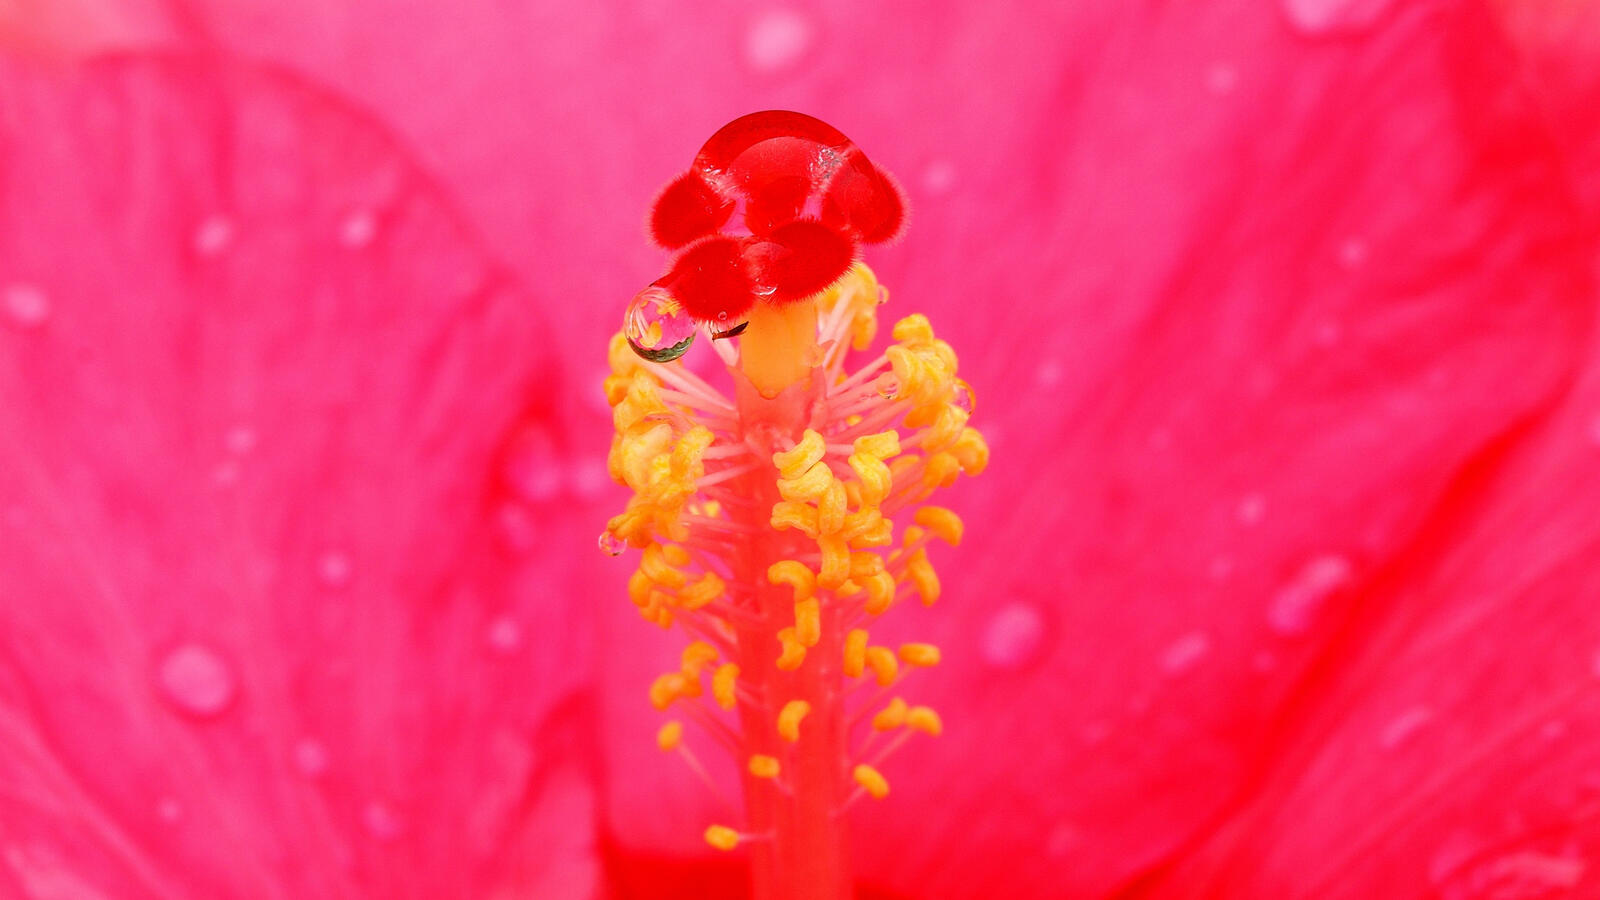 Бесплатное фото Капелька воды на пестике розового цветка